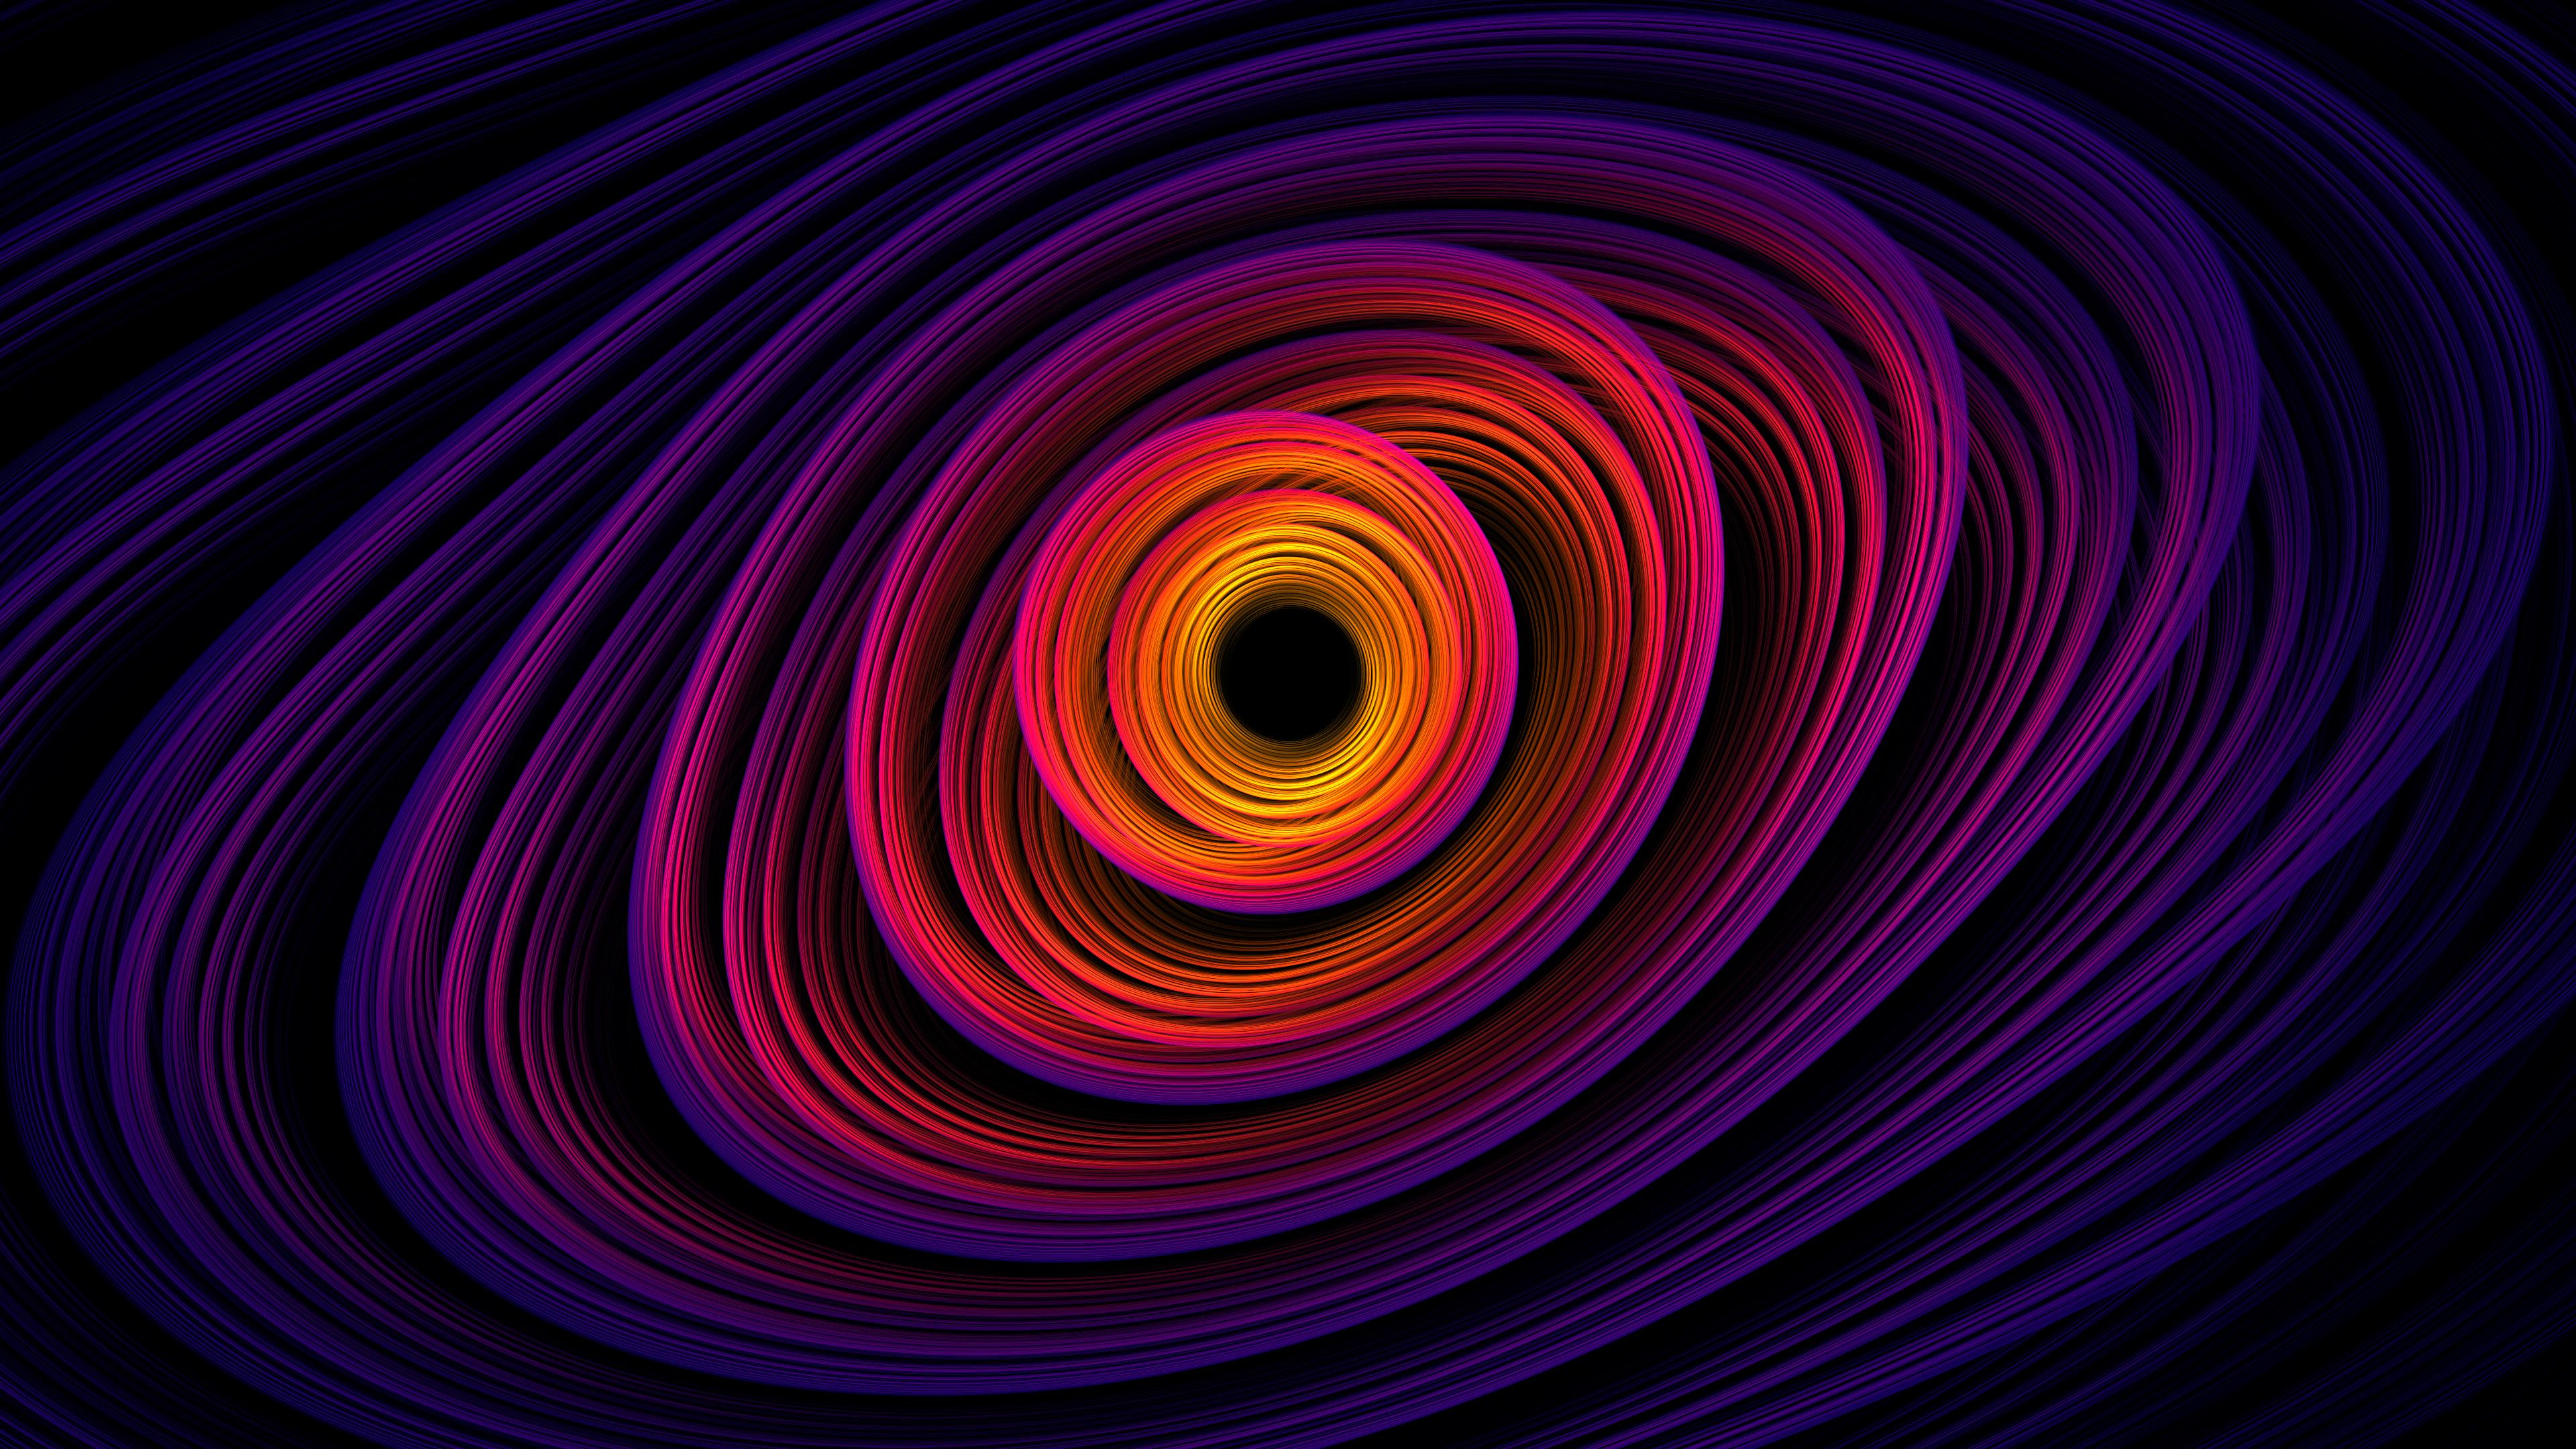 Spiral Shapes Abstract 4k, HD Abstract, 4k Wallpaper, Image